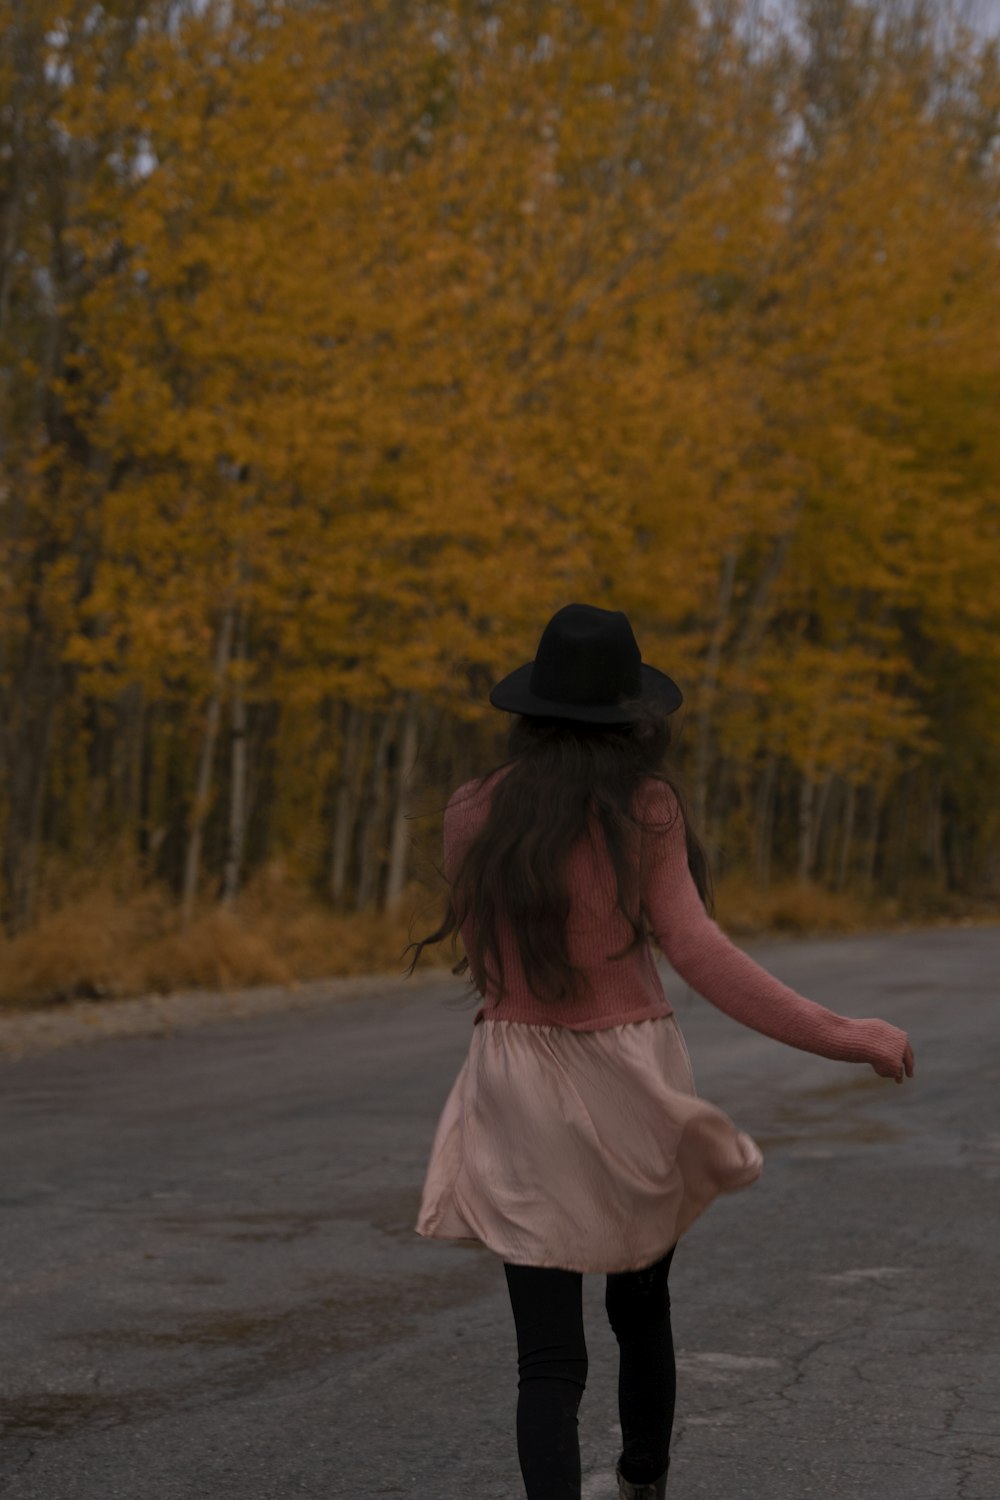 ドレスと帽子をかぶった女の子が道をスケートボードで下る